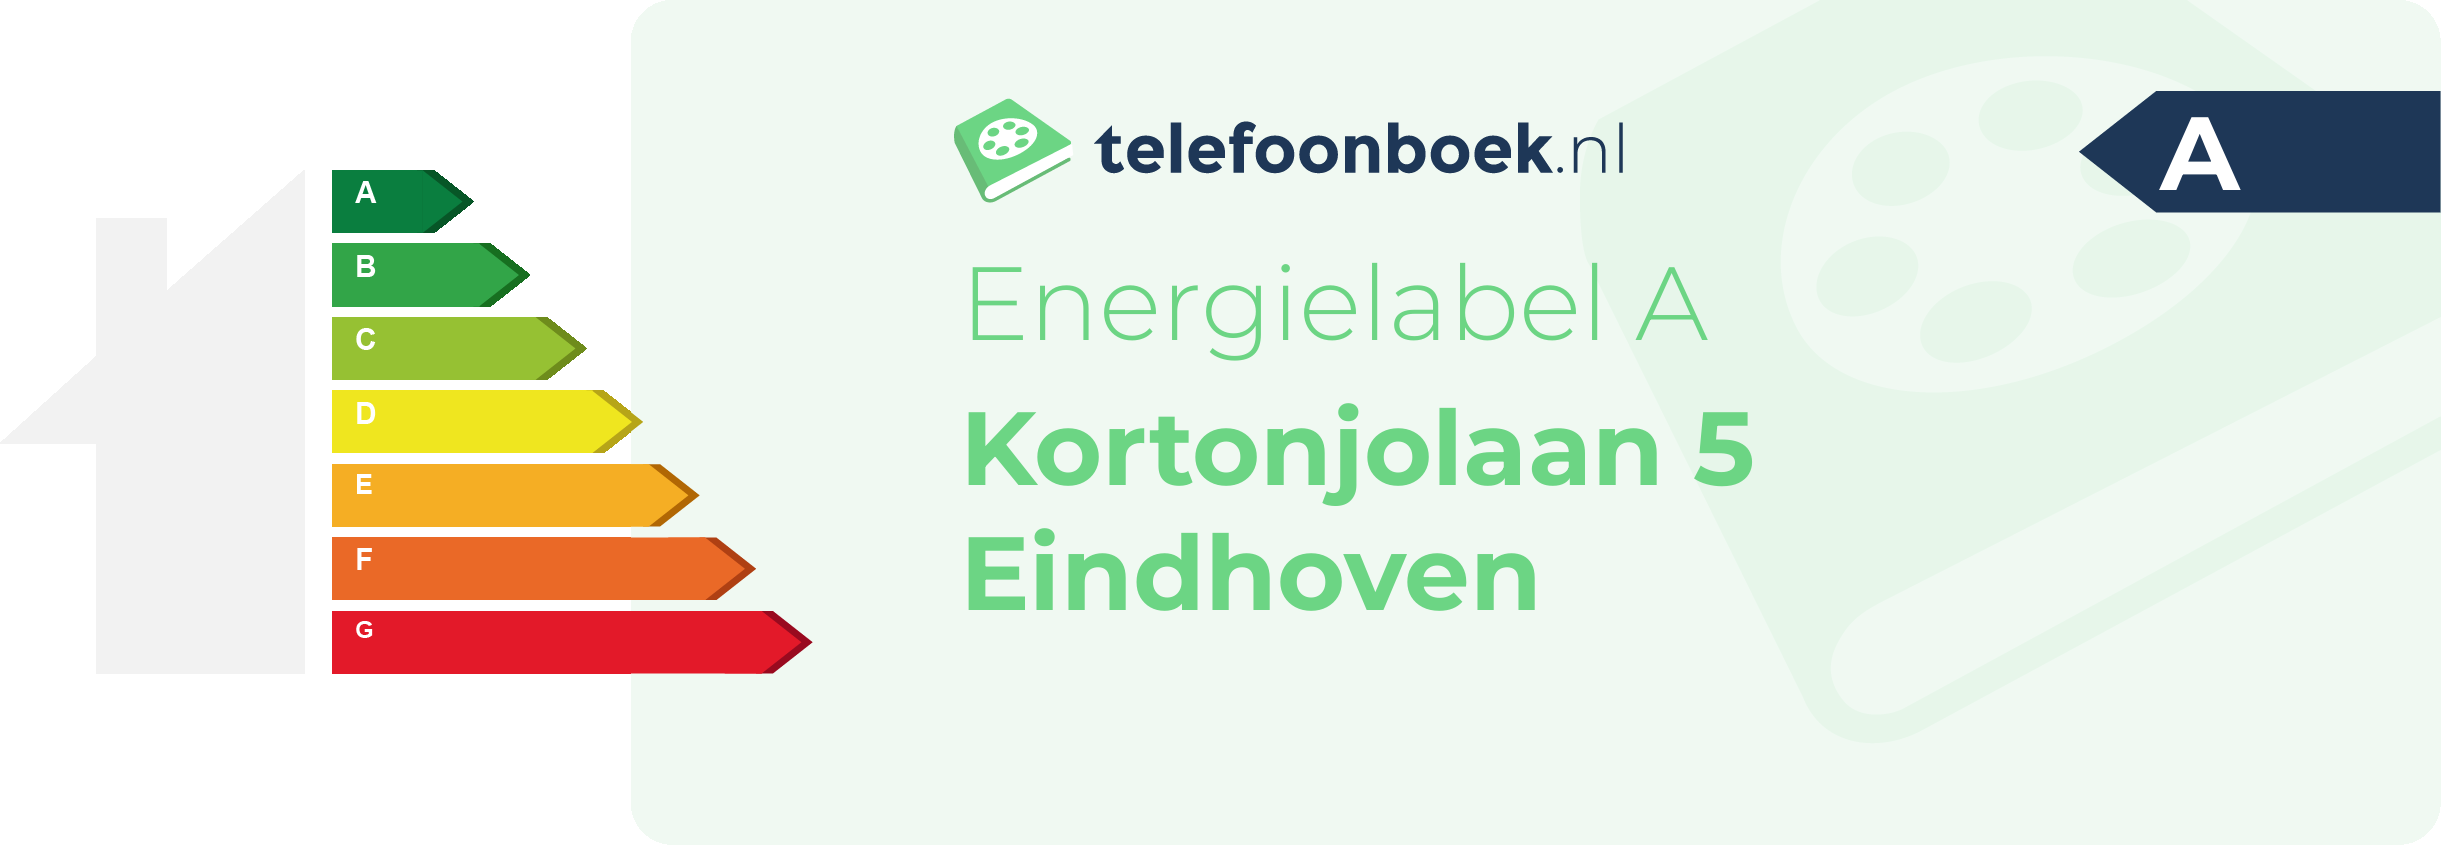 Energielabel Kortonjolaan 5 Eindhoven